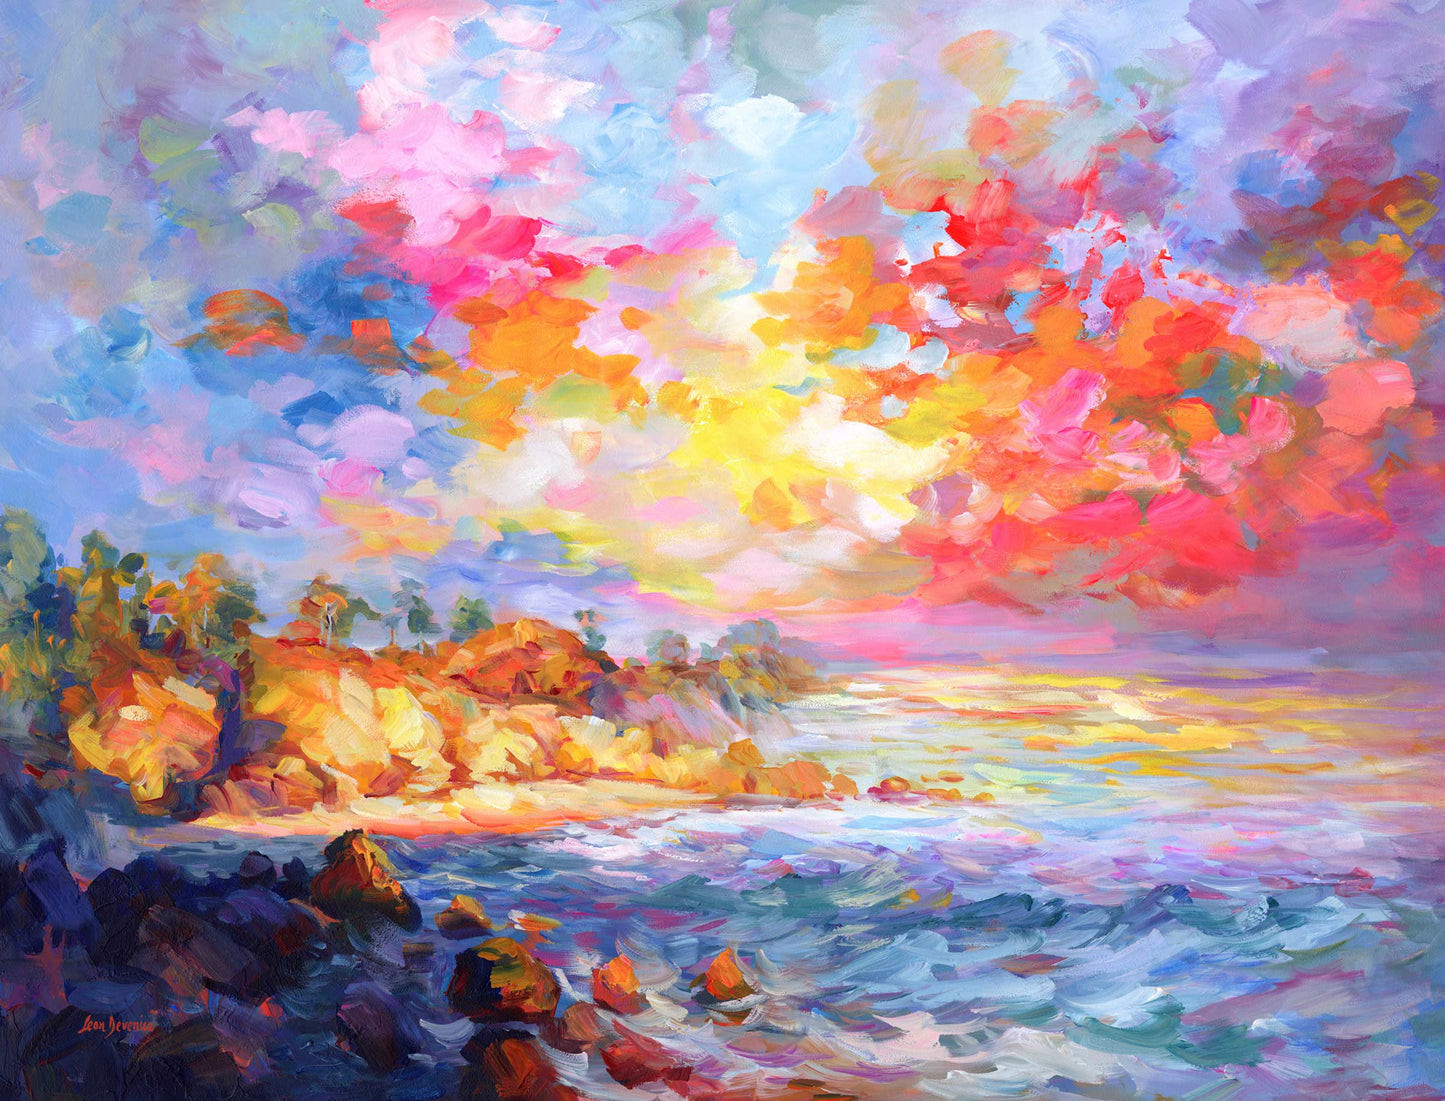 Impressionist sea painting